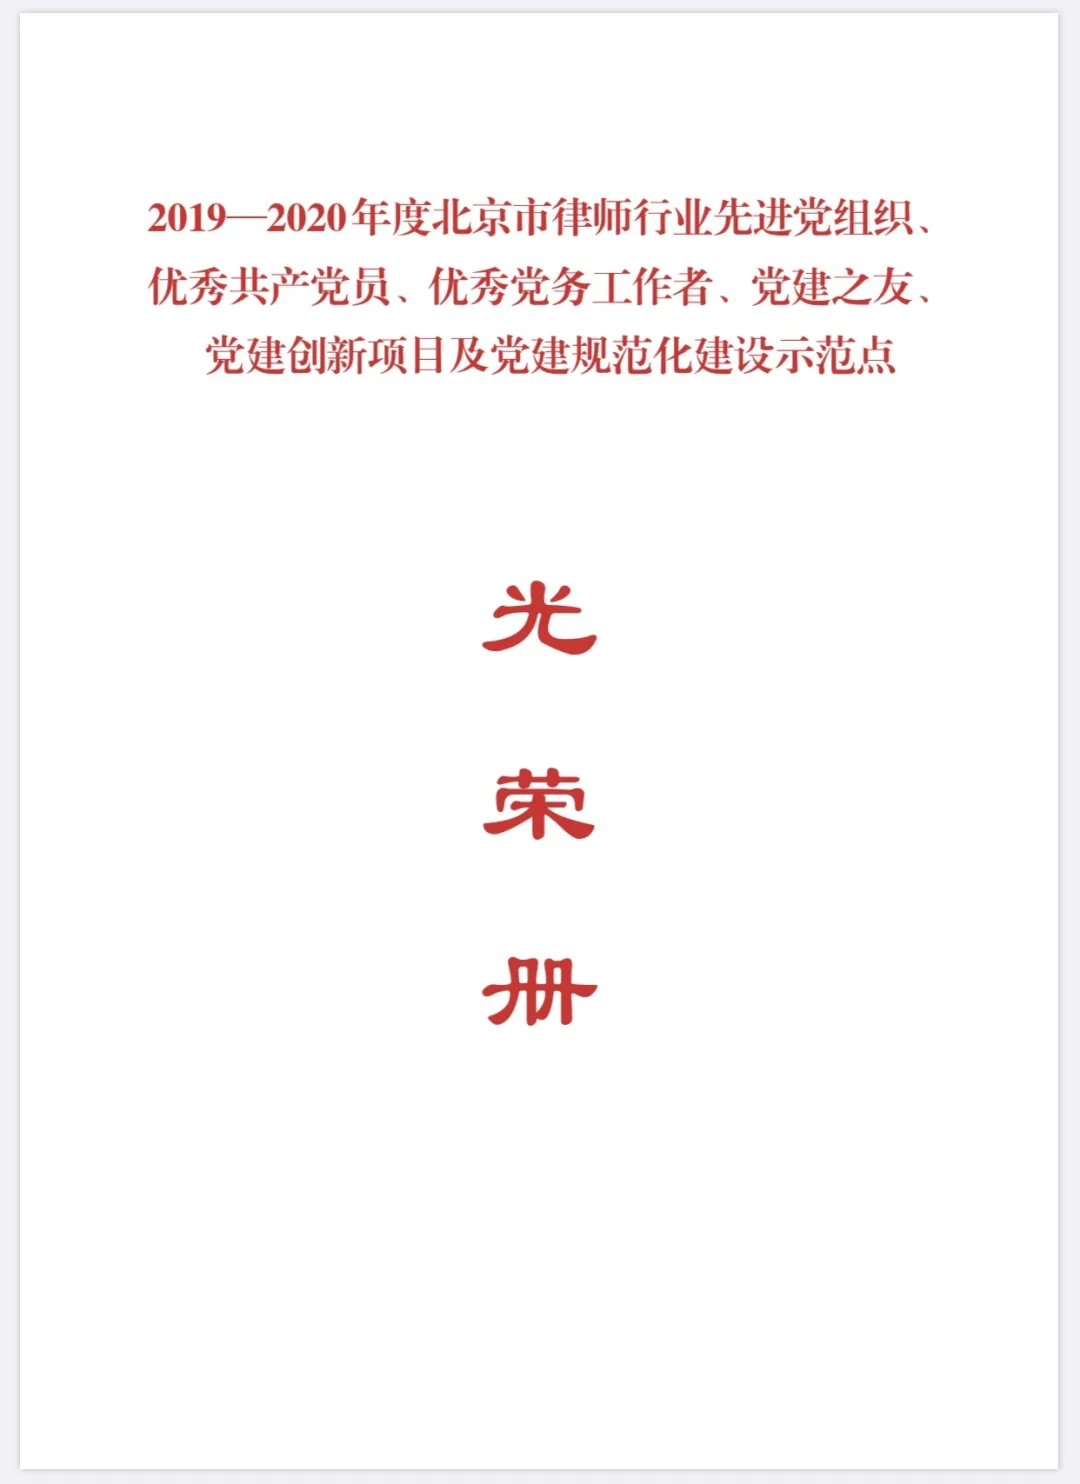 我所执行主任白雪、深圳分所主任蔡华律师荣获优秀共产党员称号